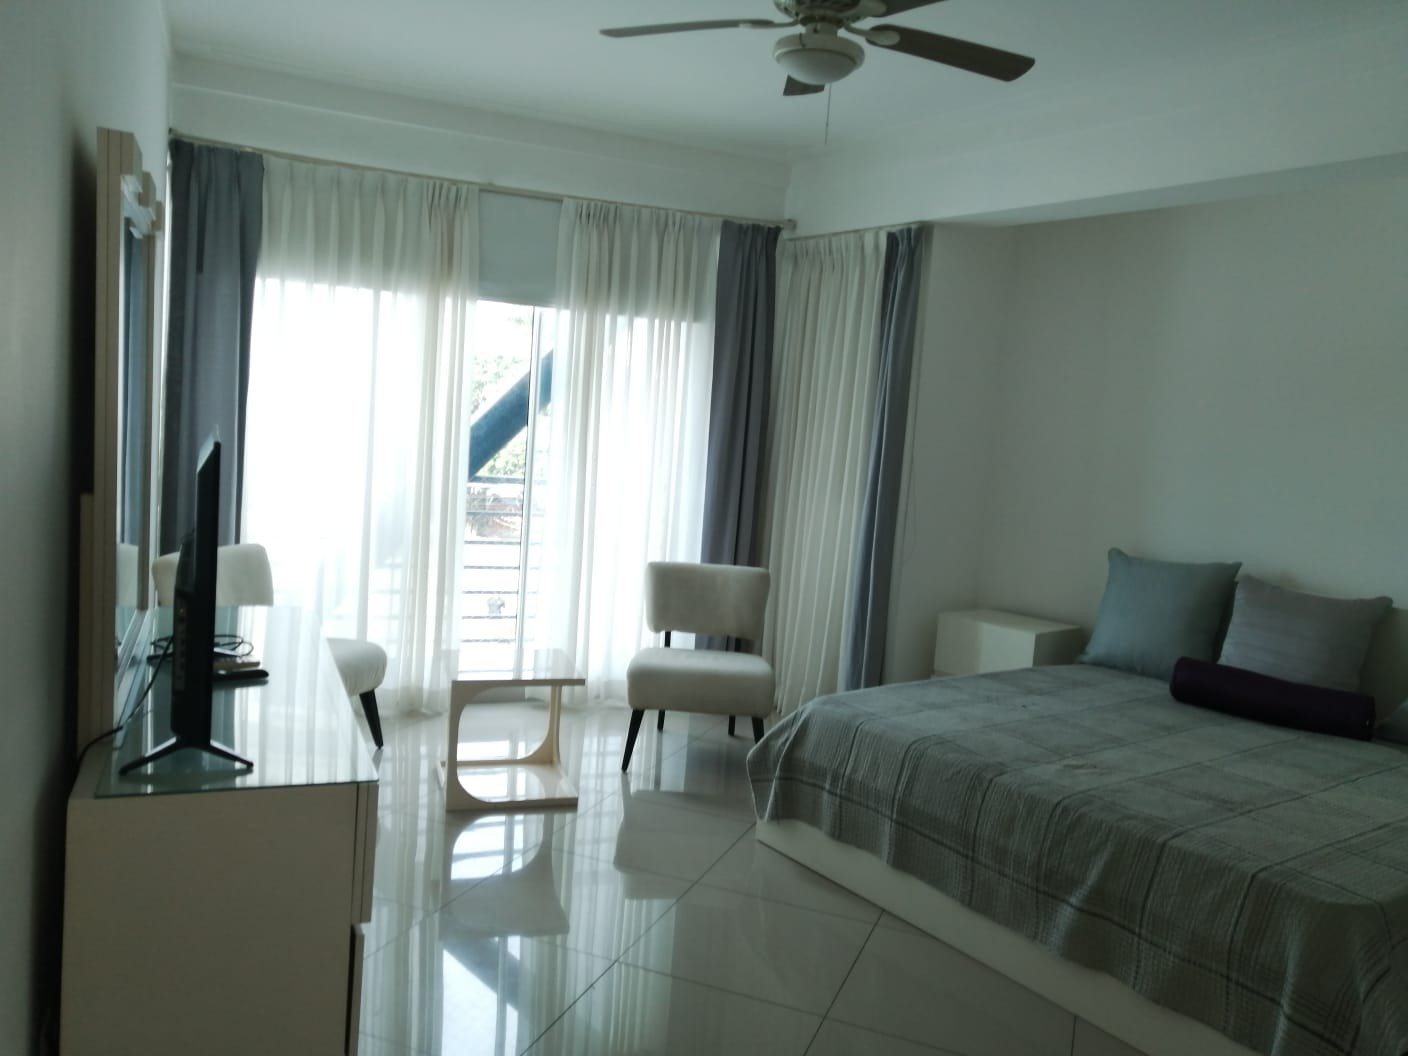 apartamentos - Alquiler: Apartamento 3 habs, amueblado, equipado con linea blanca, Serralles. 
 0